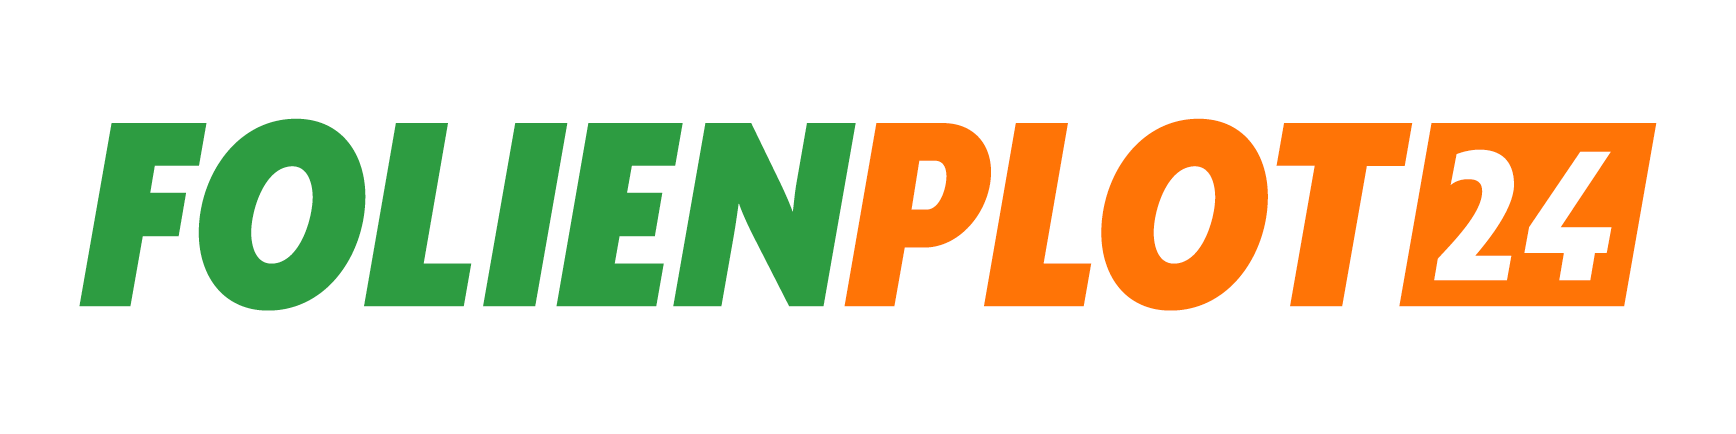 FOLIENPLOT24- Logo - Bewertungen